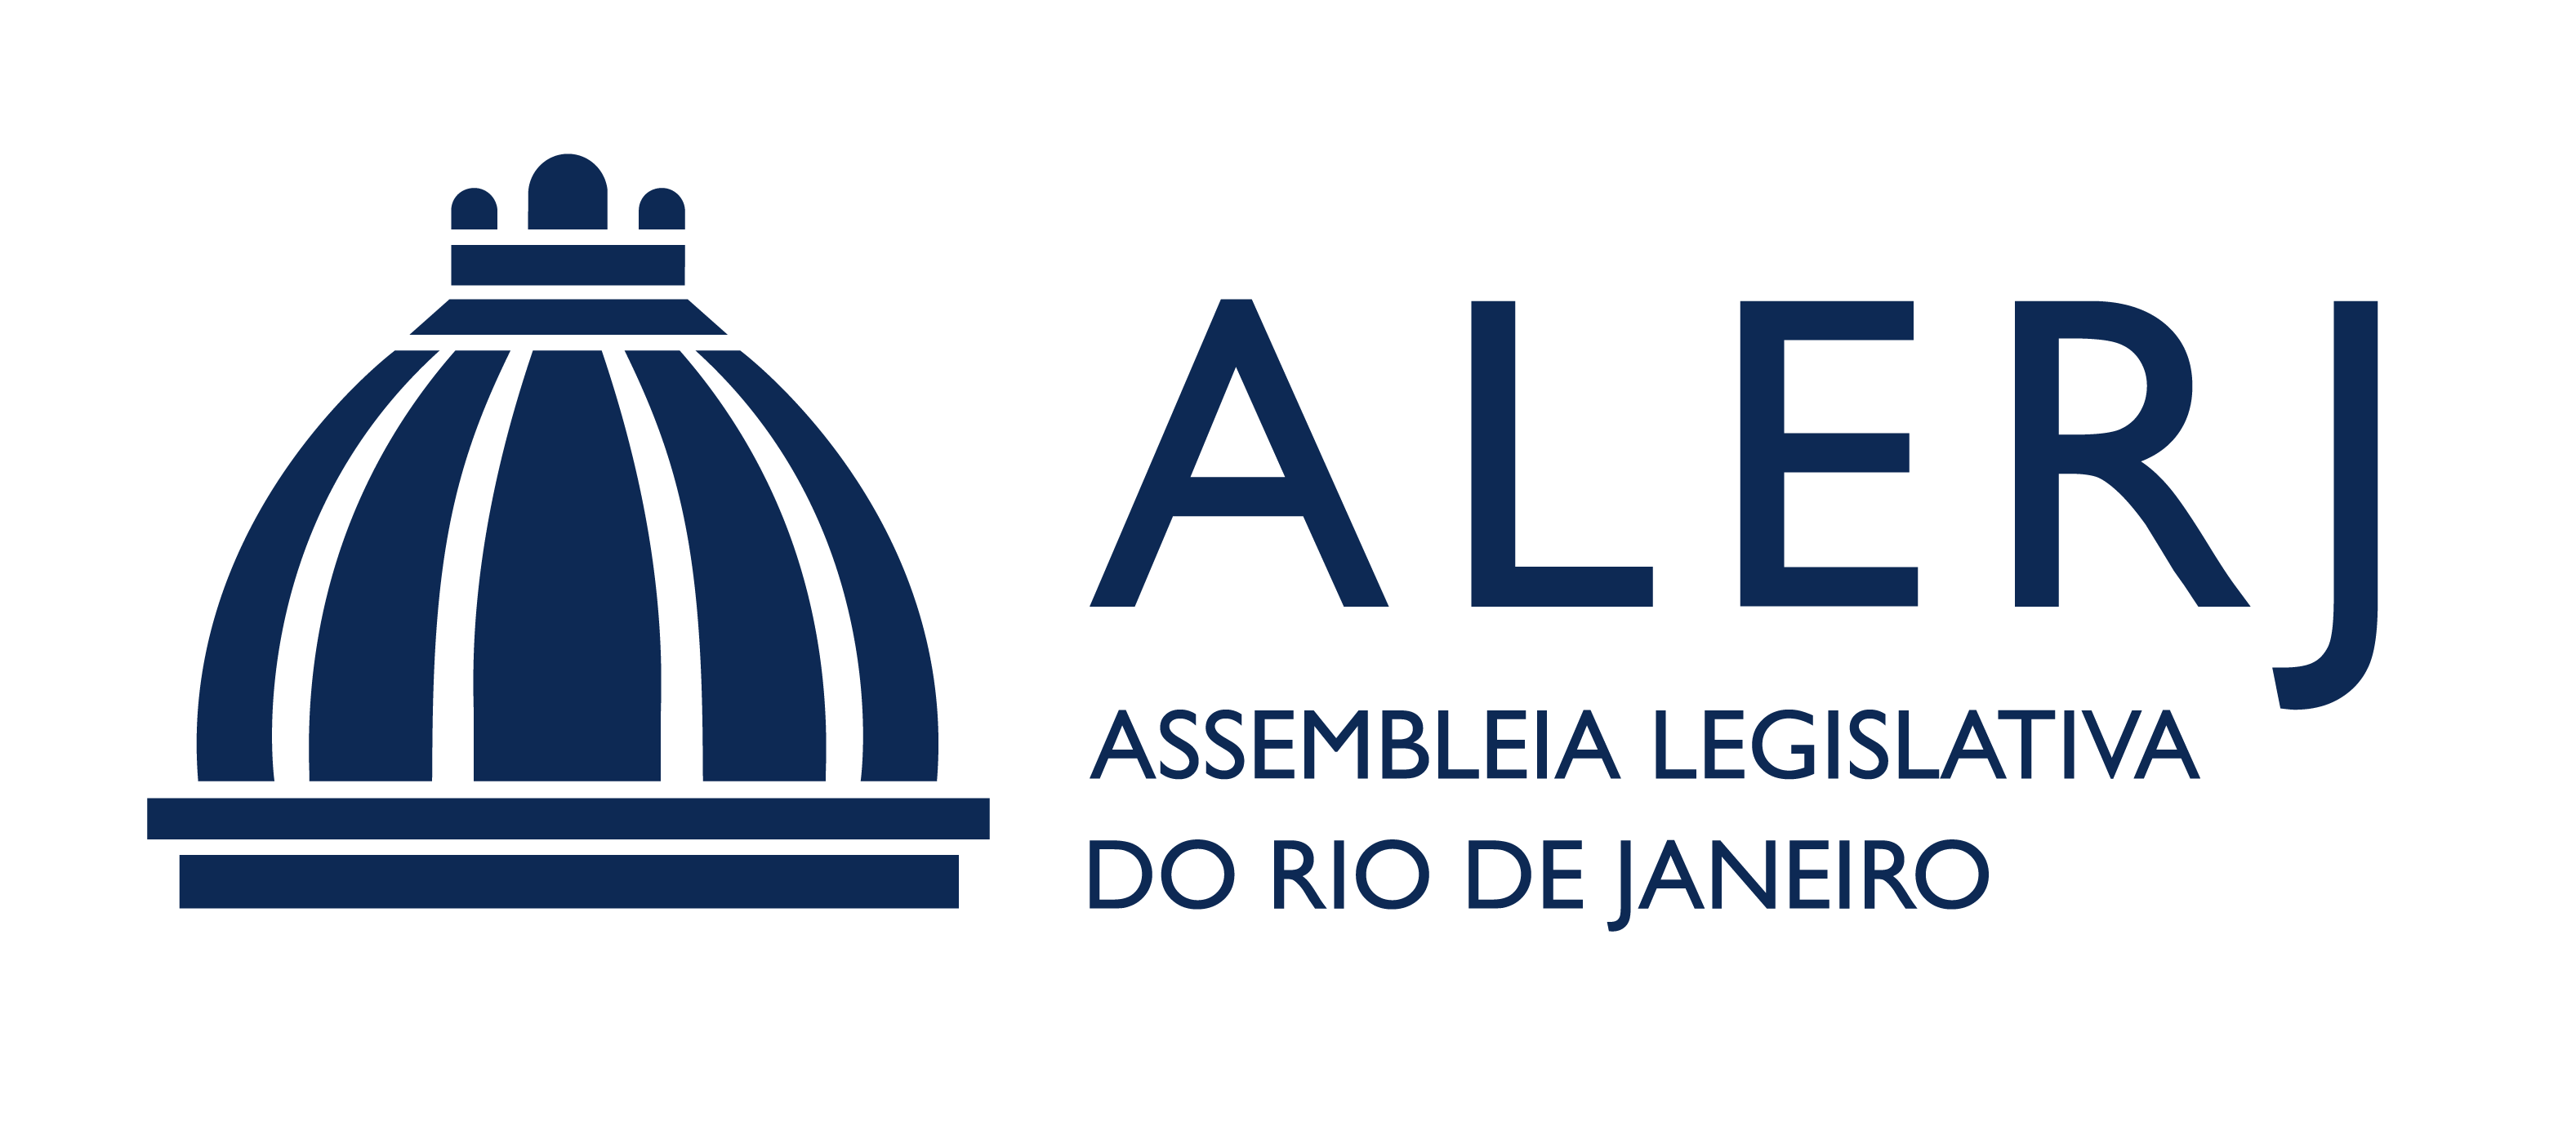 Assembleia Legislativa do Estado do Rio de Janeiro